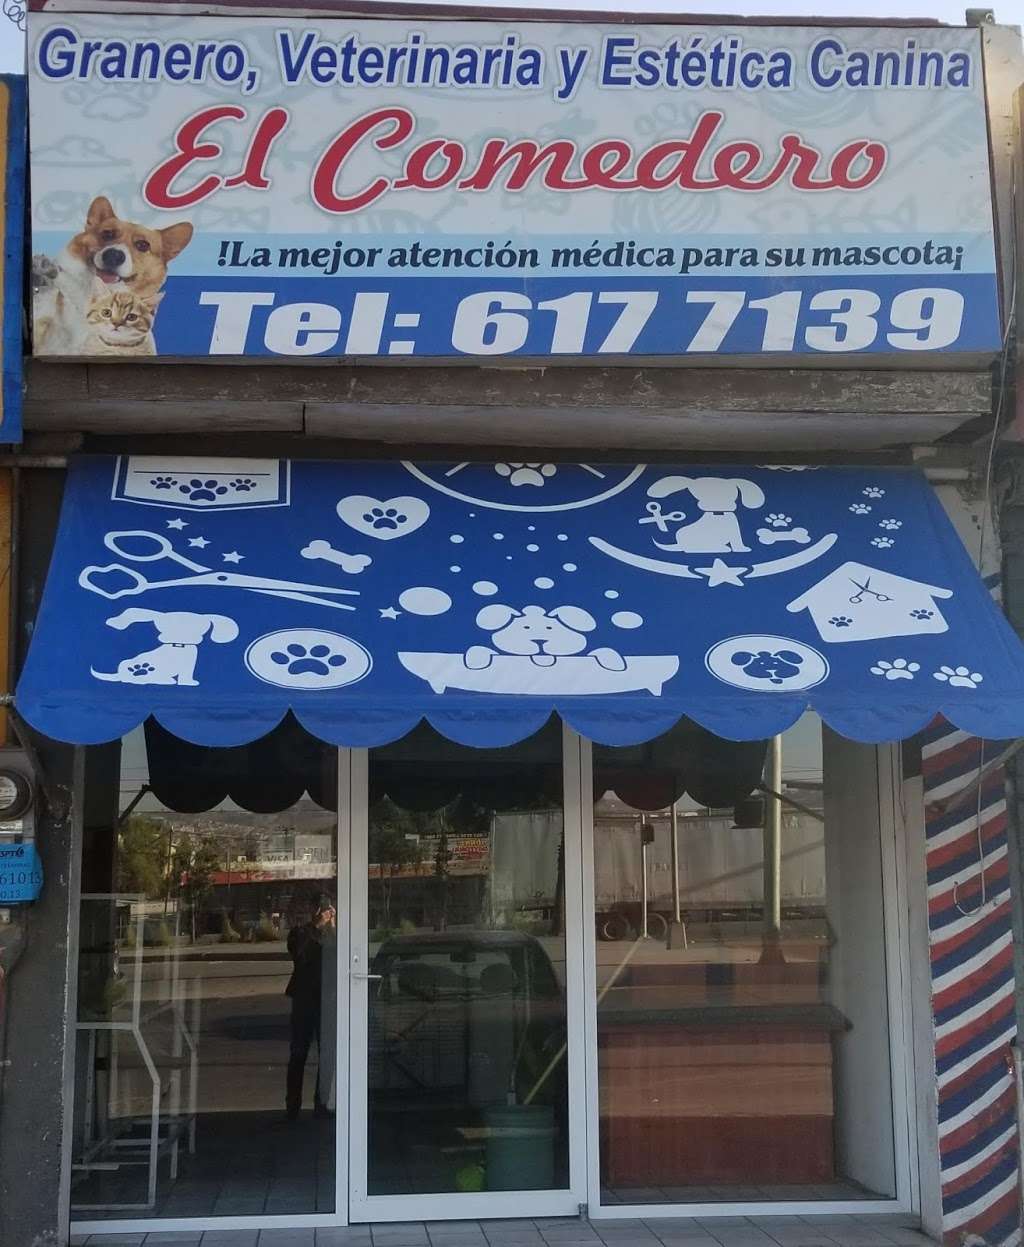 Granero El Comedero | 22225, Av de los Insurgentes 5485, La Campiña, 22225 Tijuana, B.C., Mexico | Phone: 664 617 7139